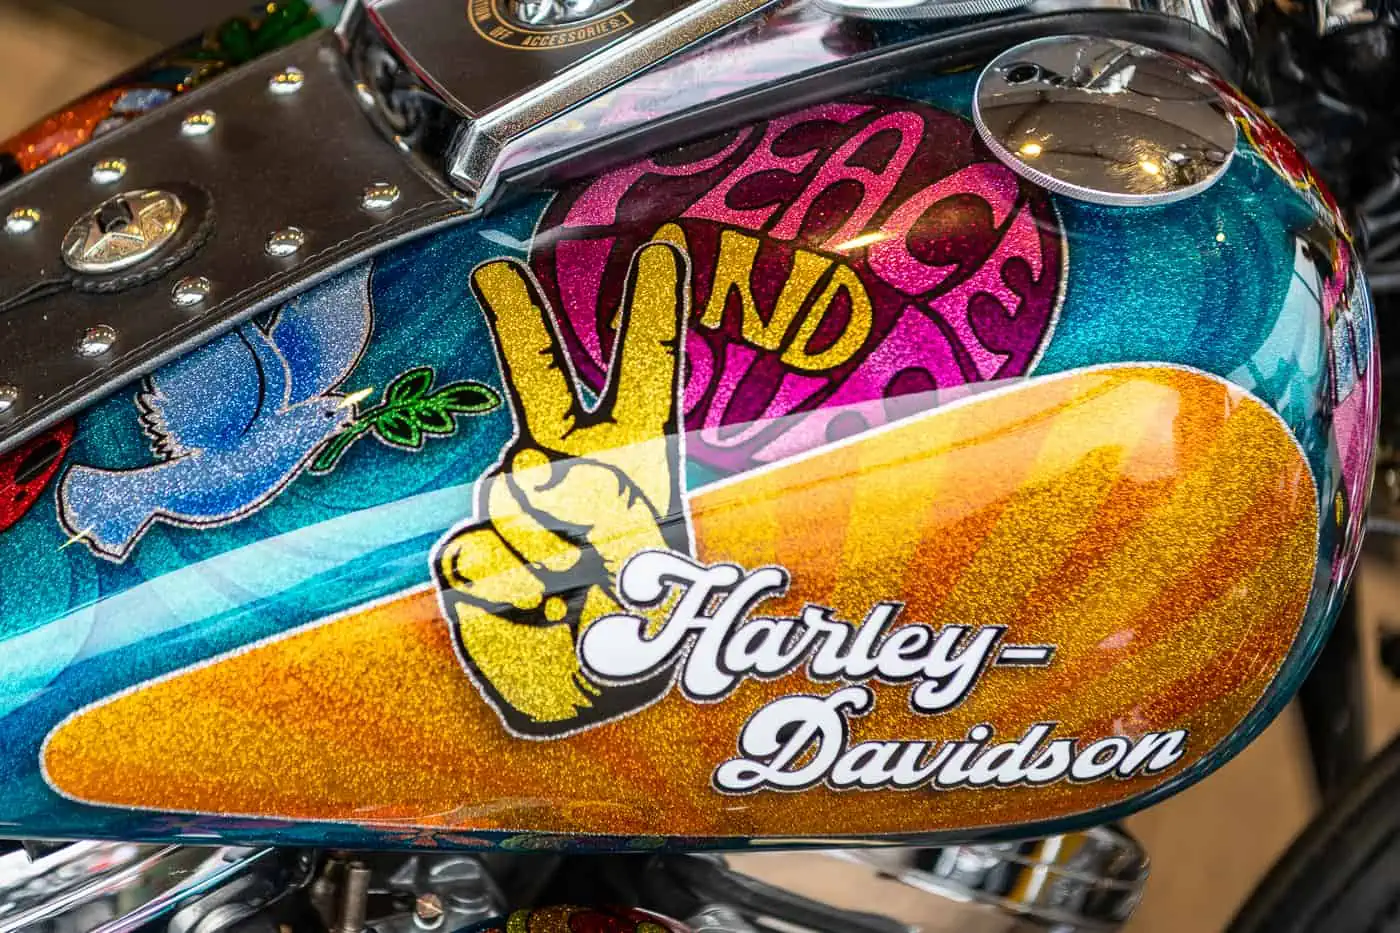 Fotograf auf den Hamburg Harley Days